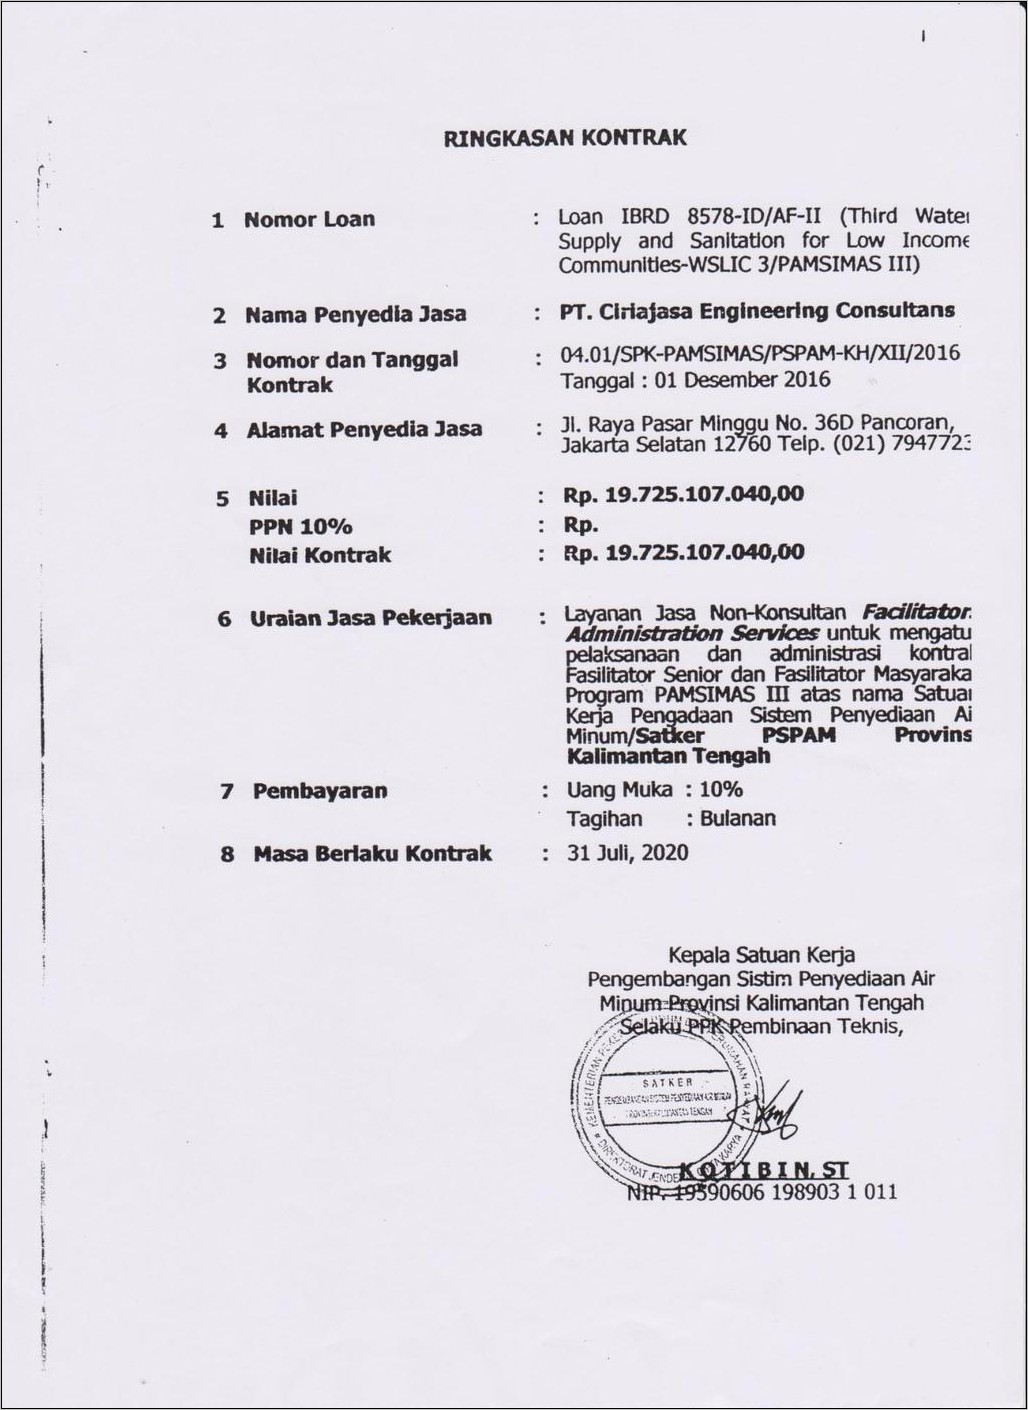 Contoh Surat Perjanjian Kontrak Konsultan Di Sulawesi Utara